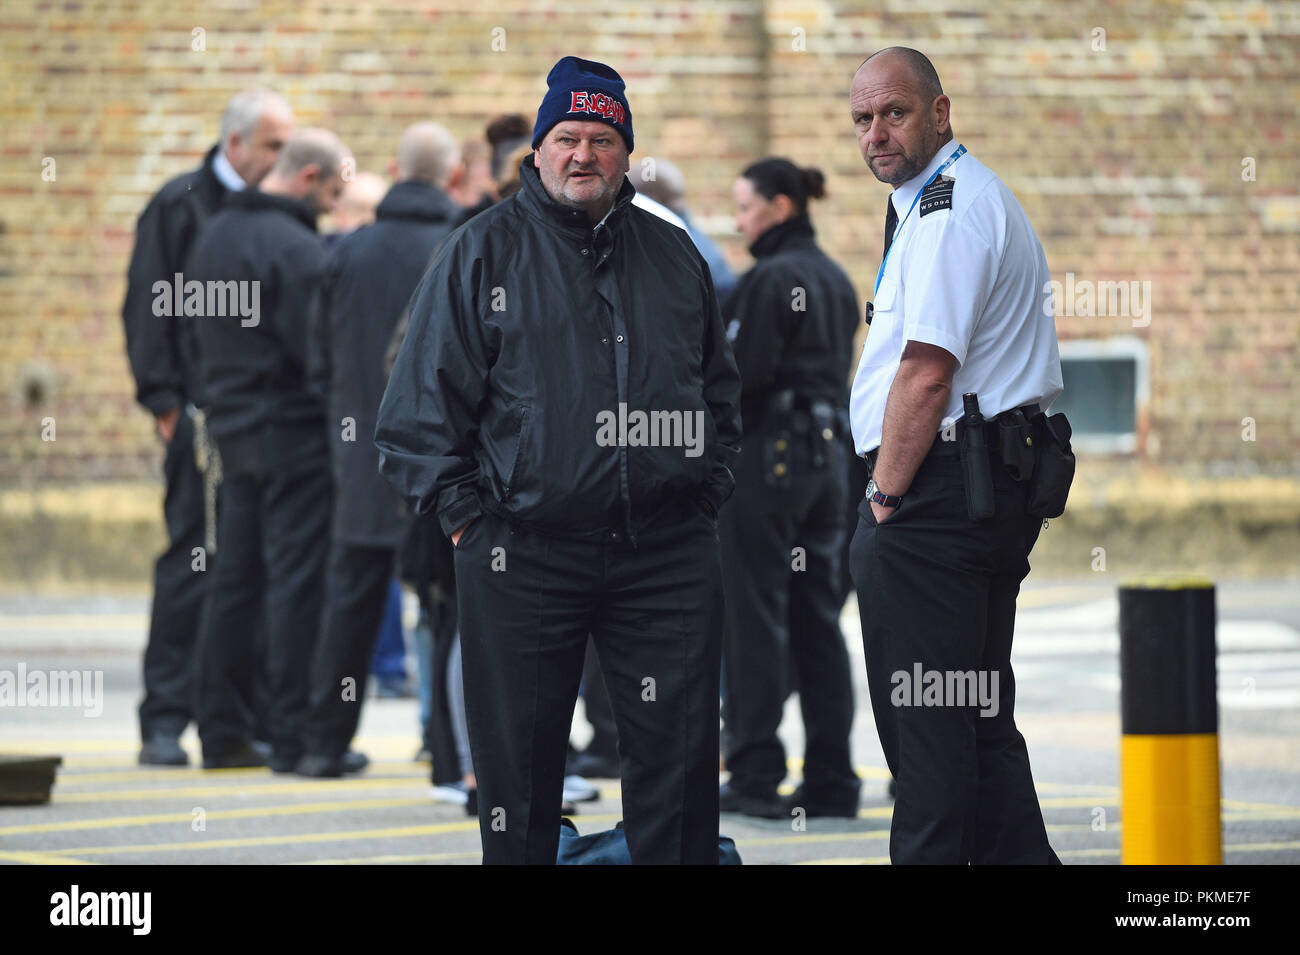 Des membres du POA, le syndicat du personnel pénitentiaire, protestant devant les exfoliations de HMP Wormwood à Londres, après un rapport accablant, ont mis en garde contre un dangereux manque de contrôle à HMP Bedford. Banque D'Images